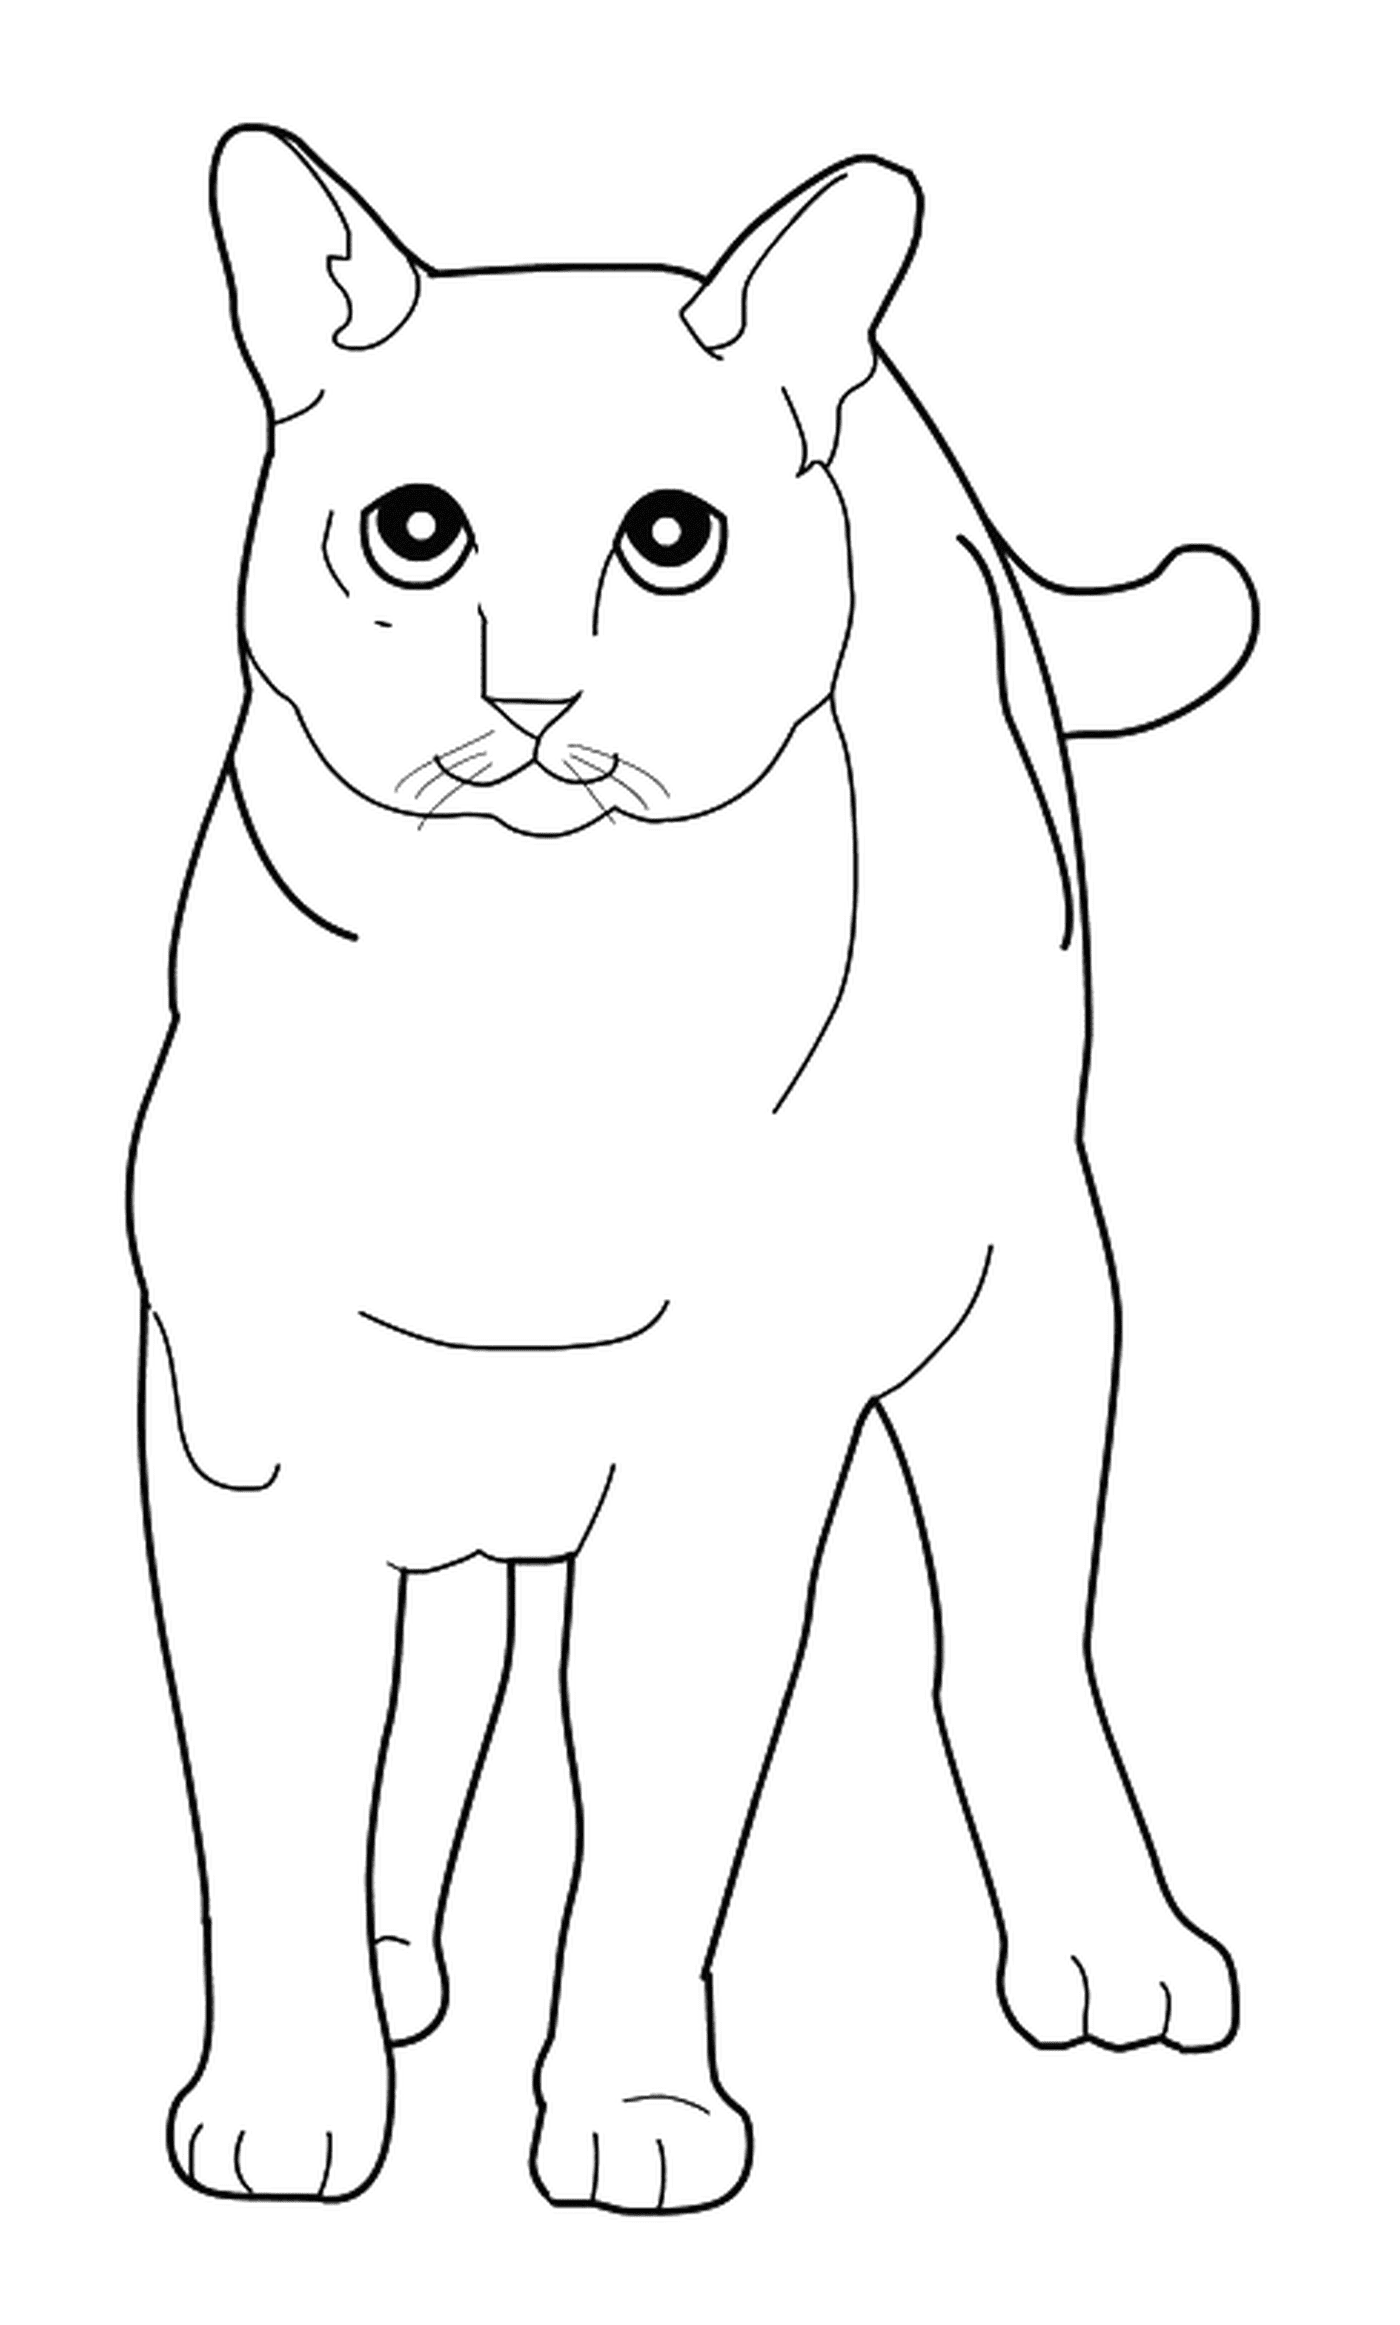  Un toncinese, un gatto in piedi in un disegno online 